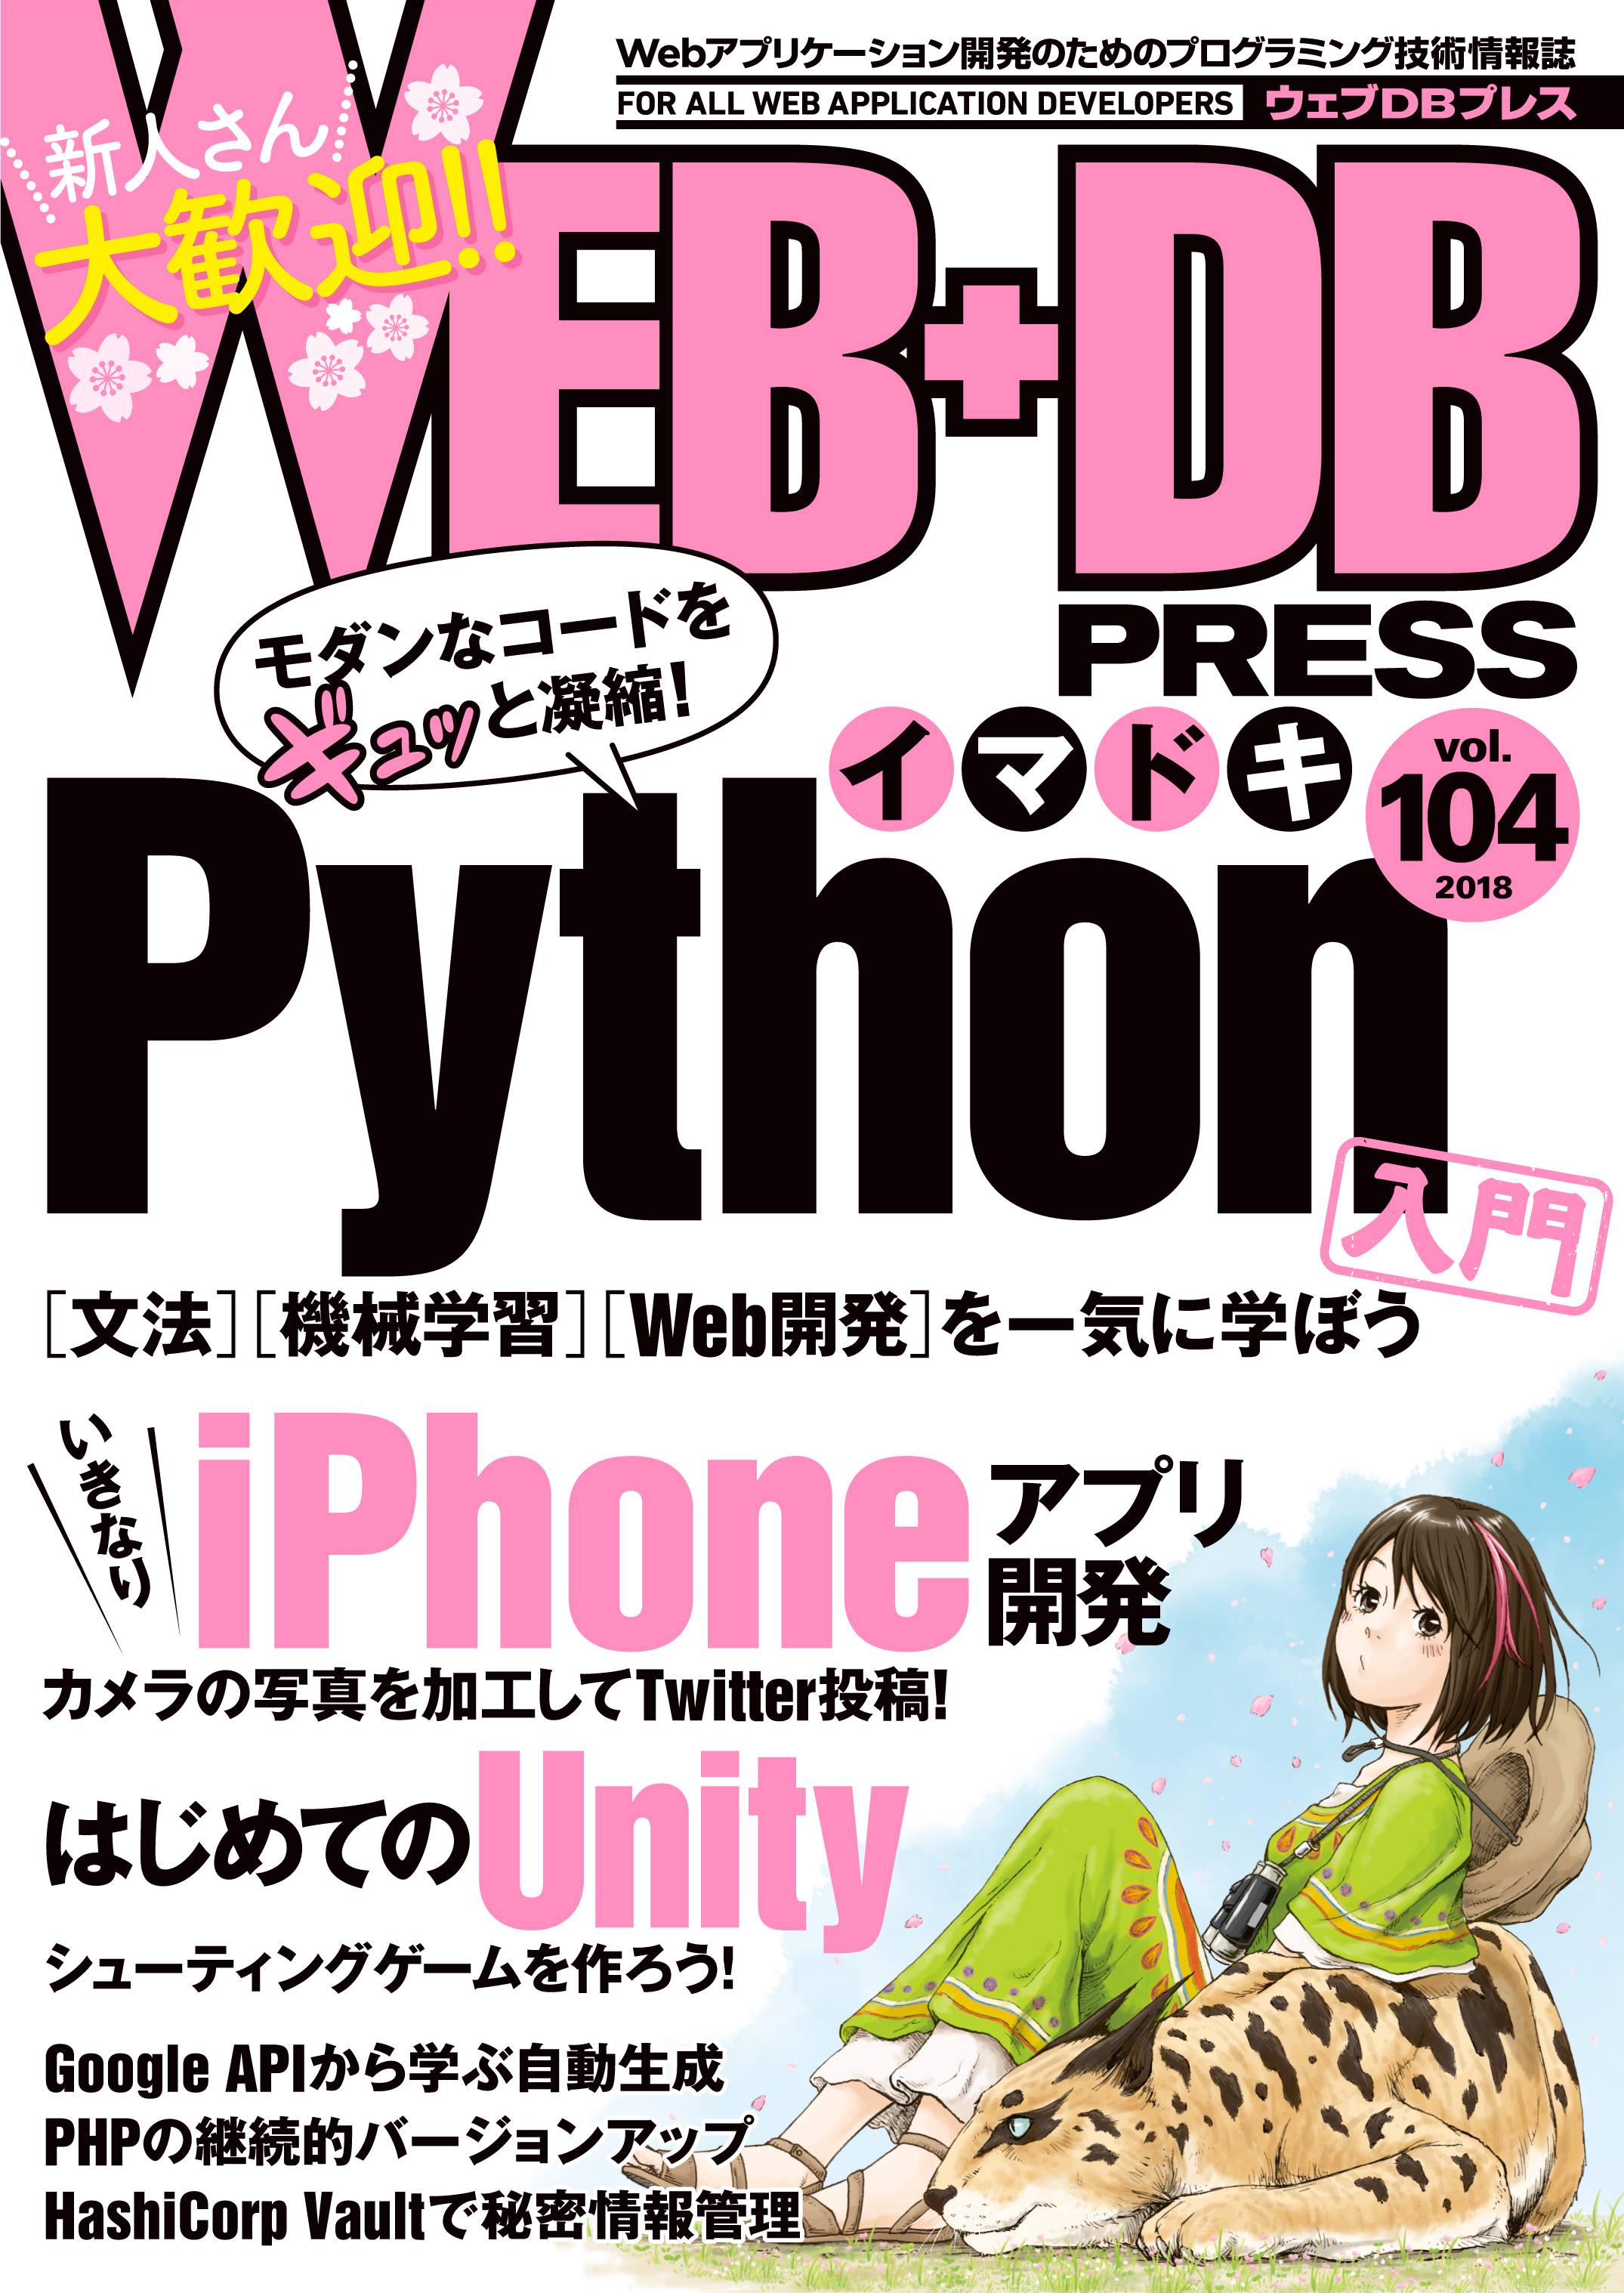 Web+DB PRESS vol.104